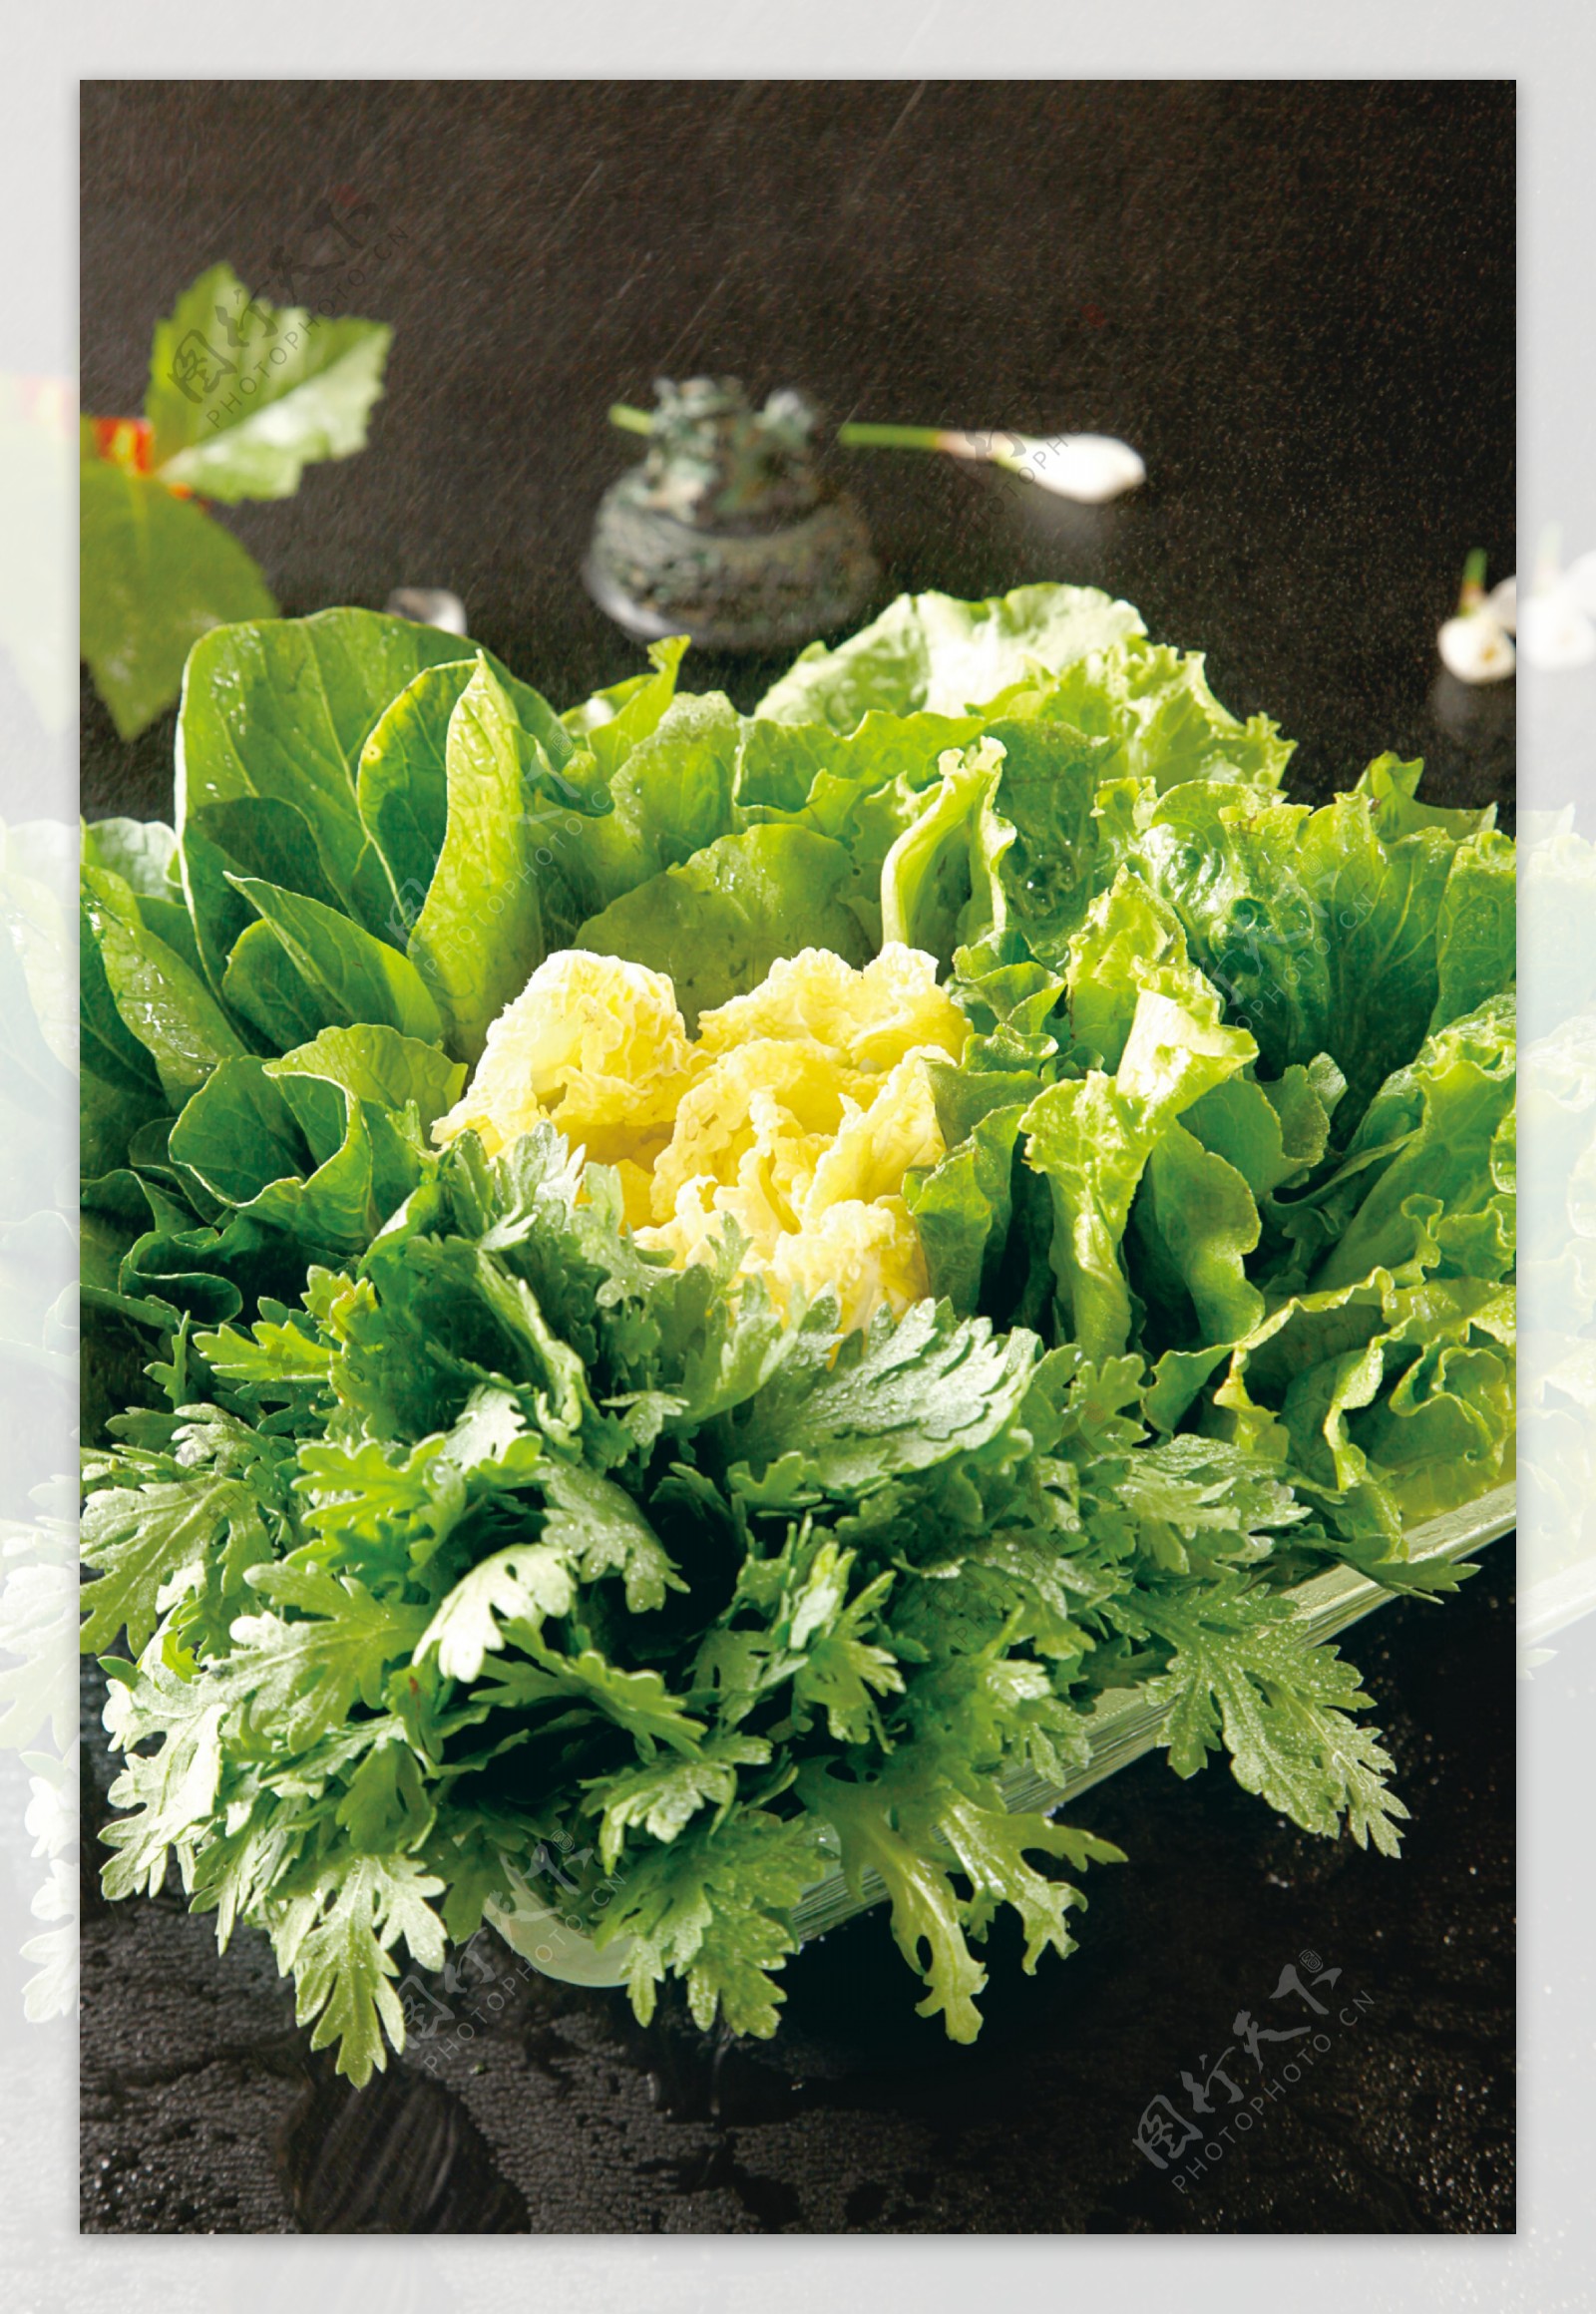 蔬菜拼盘图片素材-编号09503402-图行天下